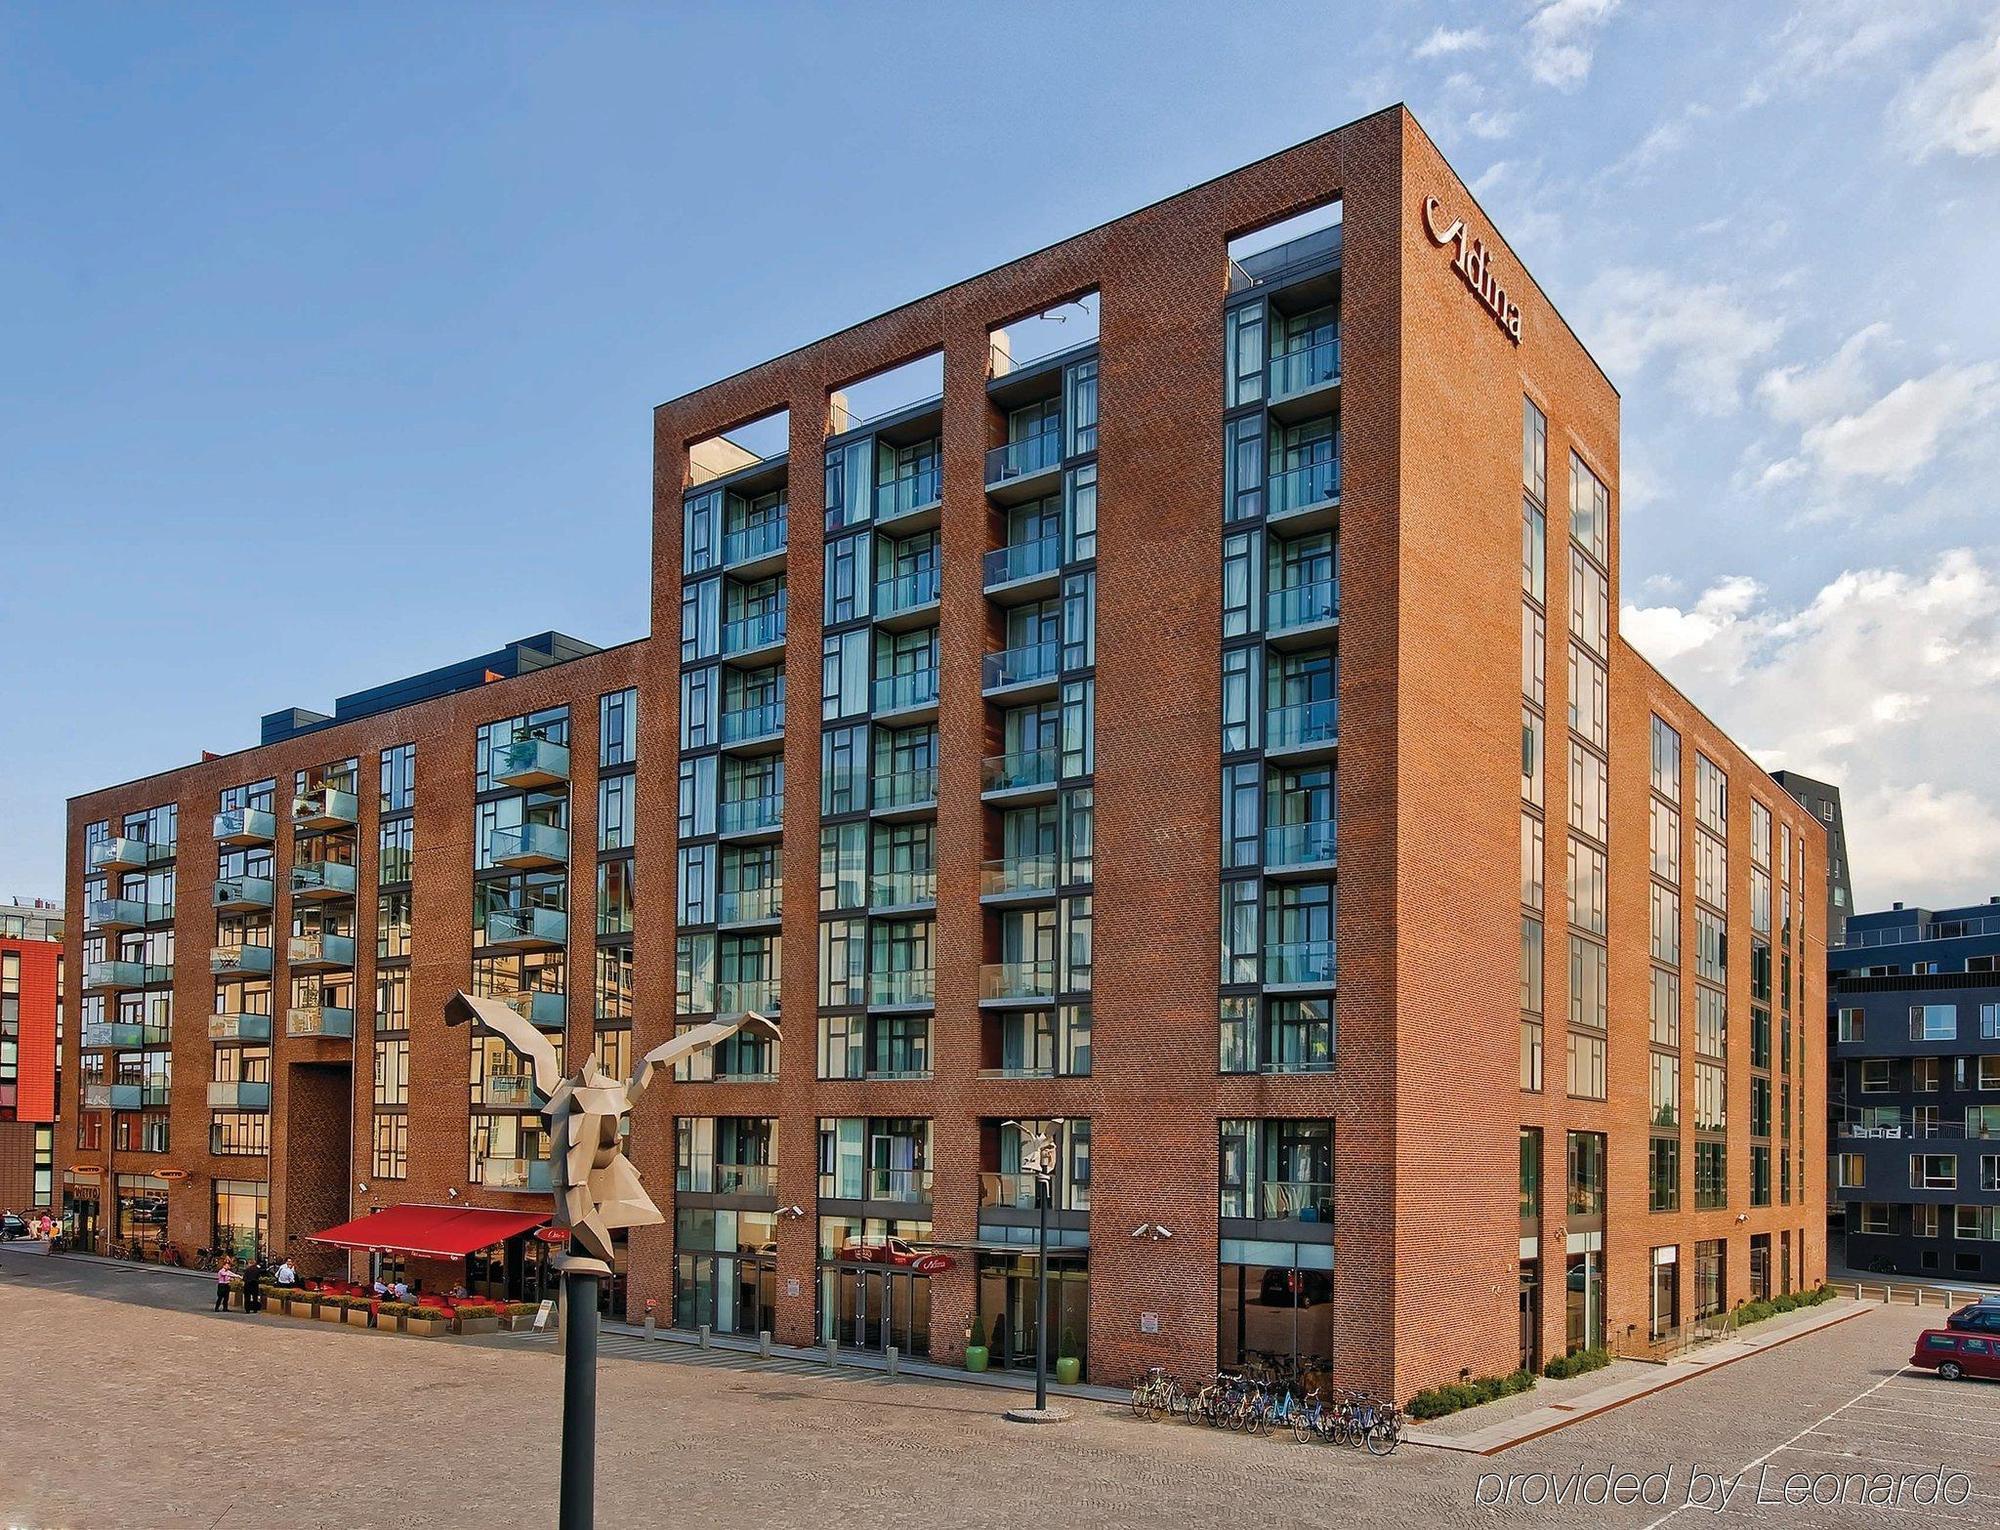 Adina Apartment Hotel Copenhagen ligger 20 minutters gange fra Christiania, og 1 km fra Den lille havfrue. 